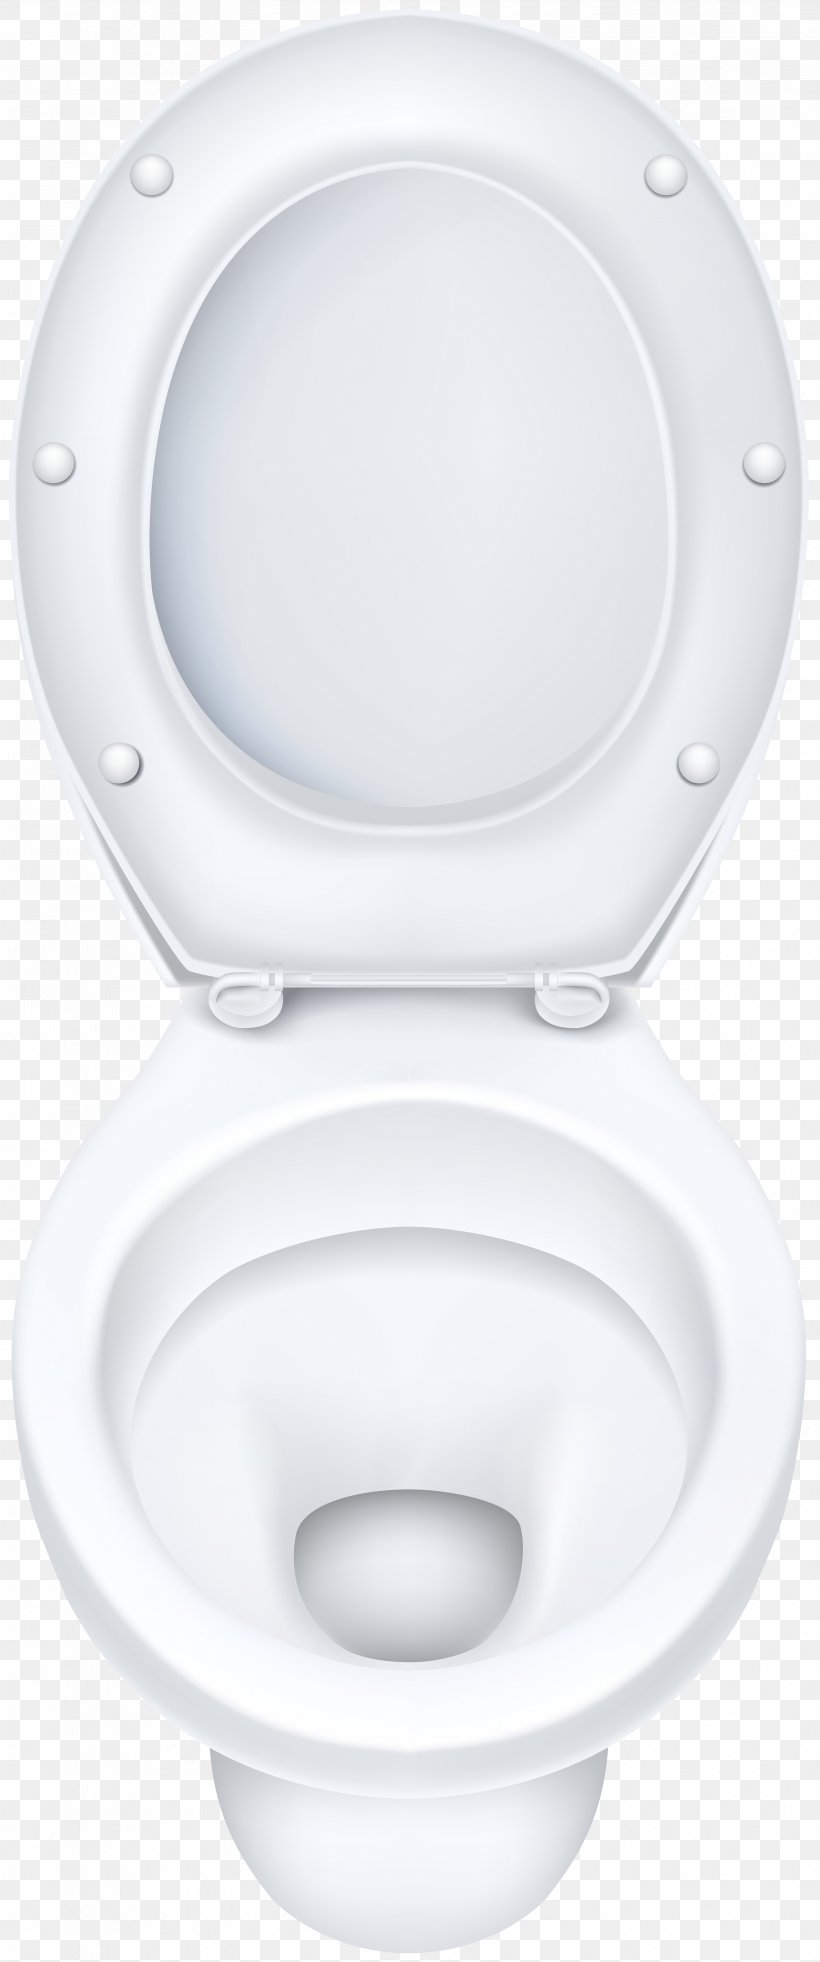 Toilet & Bidet Seats Tap Bathroom Sink, PNG, 3342x8000px, Toilet Bidet Seats, Bathroom, Bathroom Sink, Hardware, Plumbing Fixture Download Free